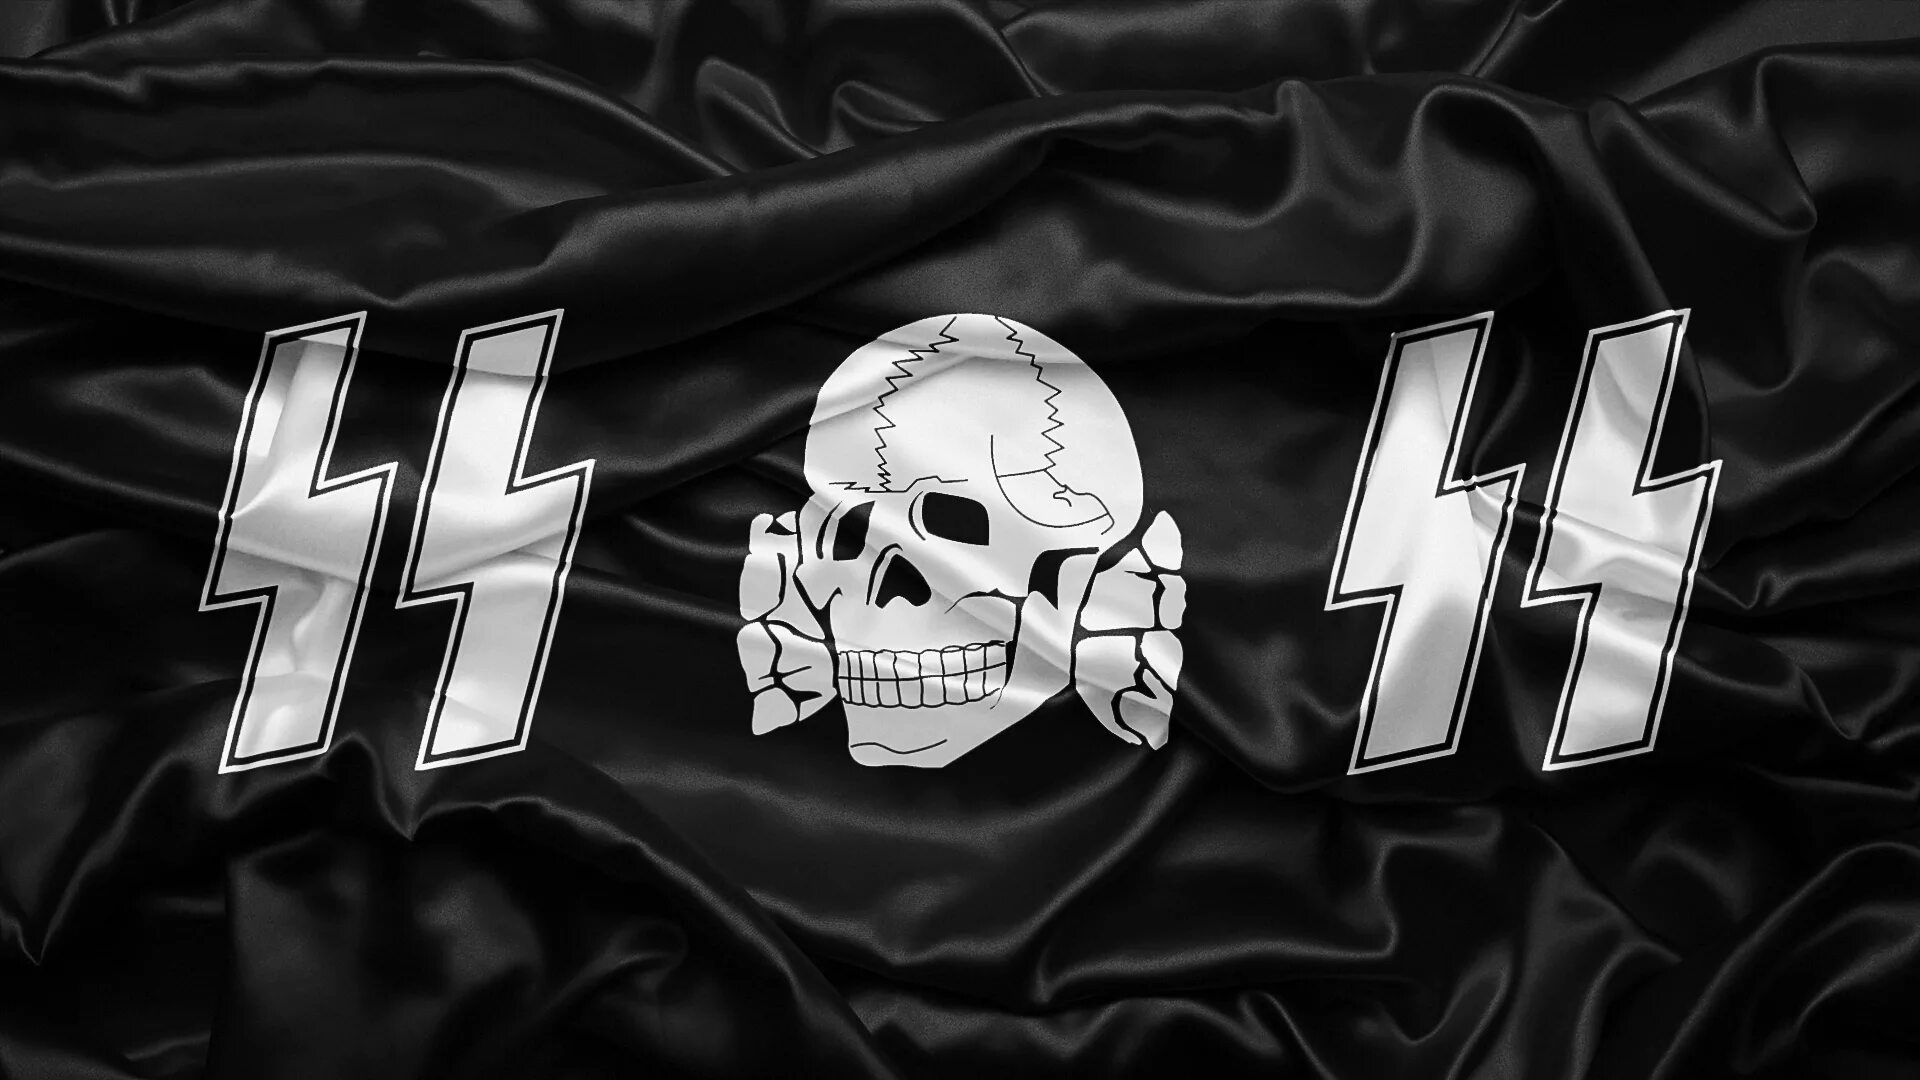 Фон сс. Waffen SS символика. Флаги 3 рейха и СС. Мертвая голова Тотенкопф. Флаг Ваффен СС.